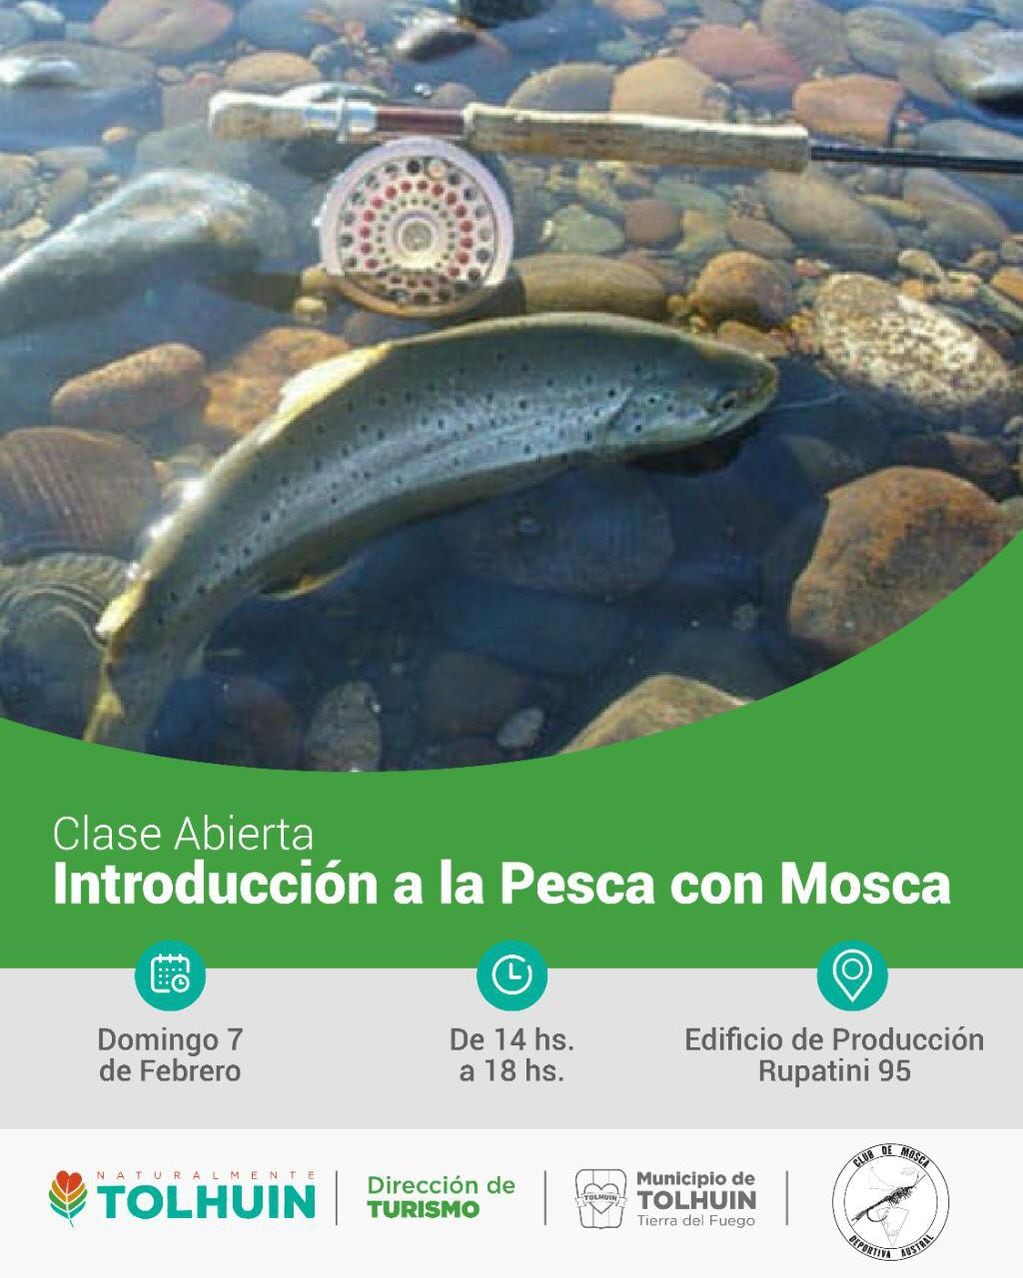 Clase sobre "Introducción a la Pesca con Mosca”, libre y gratuita.